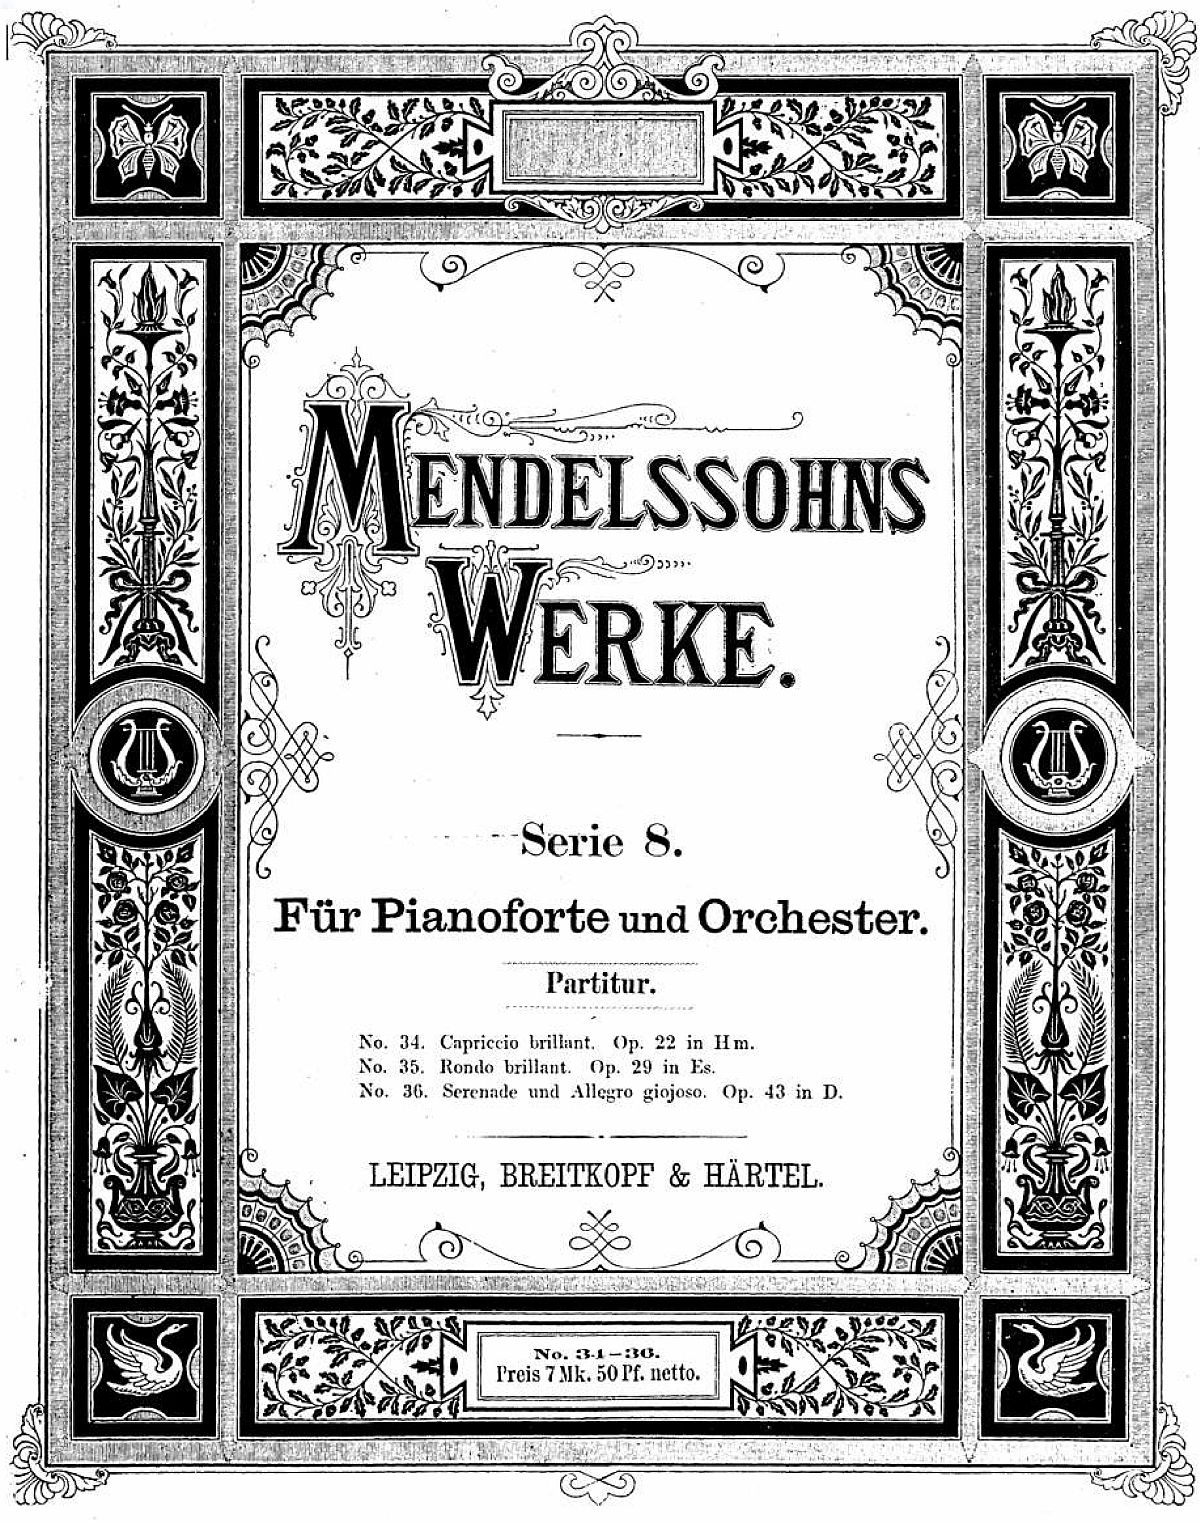 Felix Mendelssohn, partition de son Op.22, cliquer pour une vue agrandie resp. voir l'original et ses références